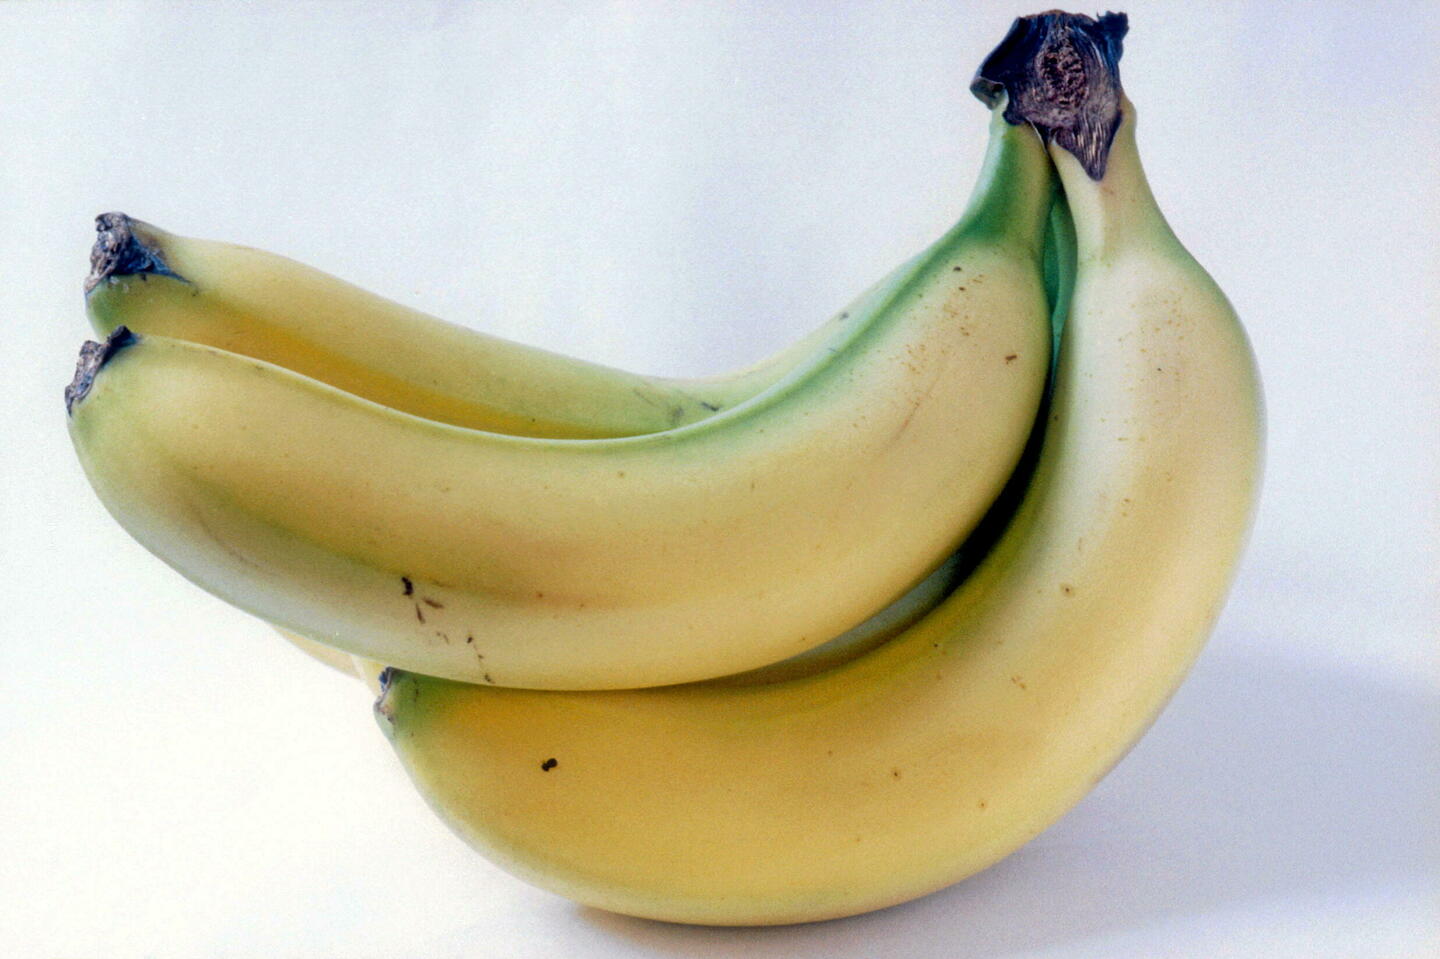 Menacée par un champignon, la banane la plus populaire au monde pourrait disparaître